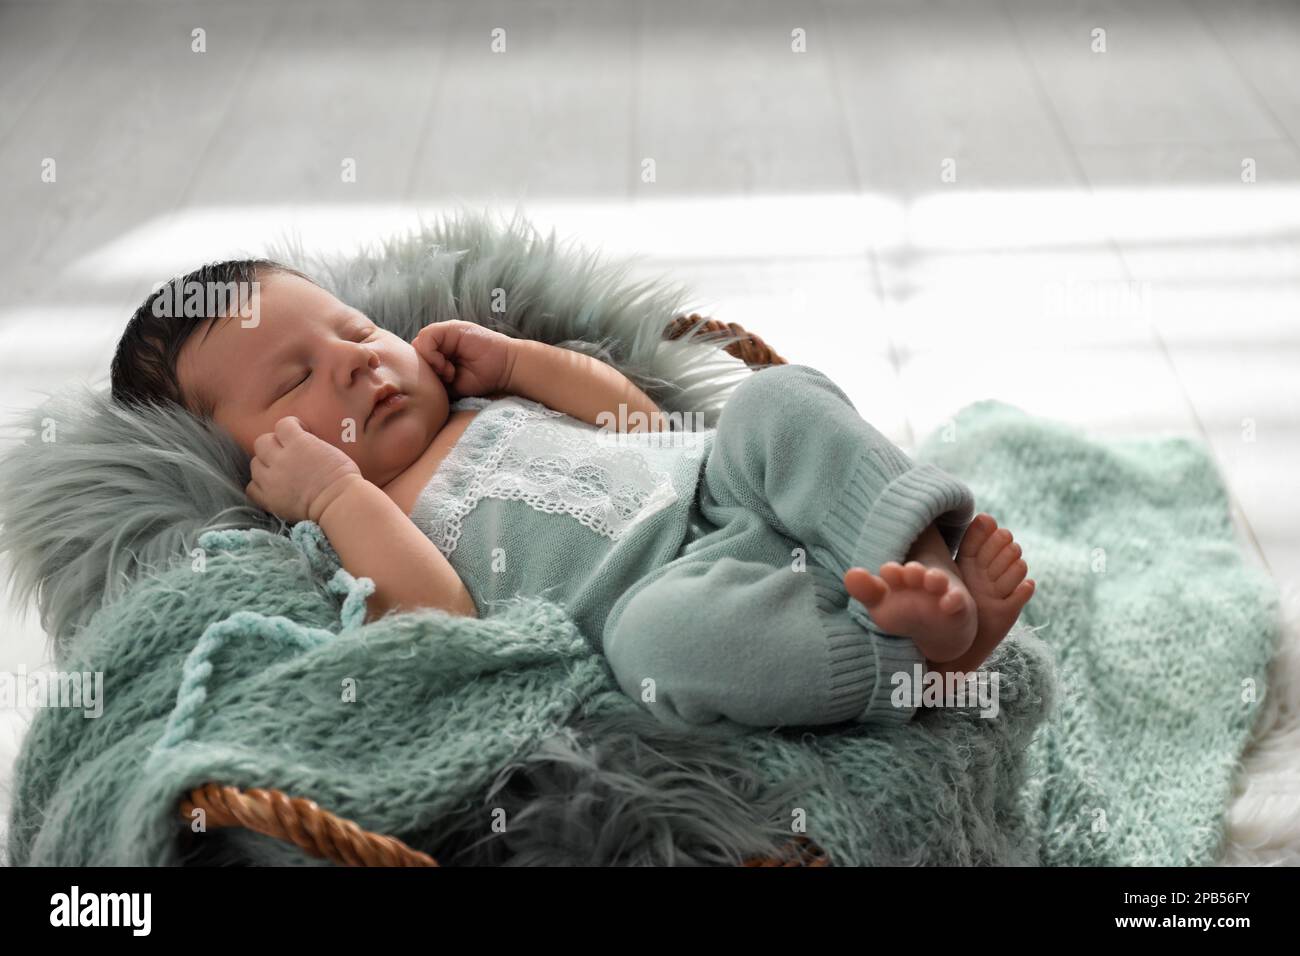 Lindo bebé recién nacido durmiendo en cesta de mimbre Fotografía de stock Alamy